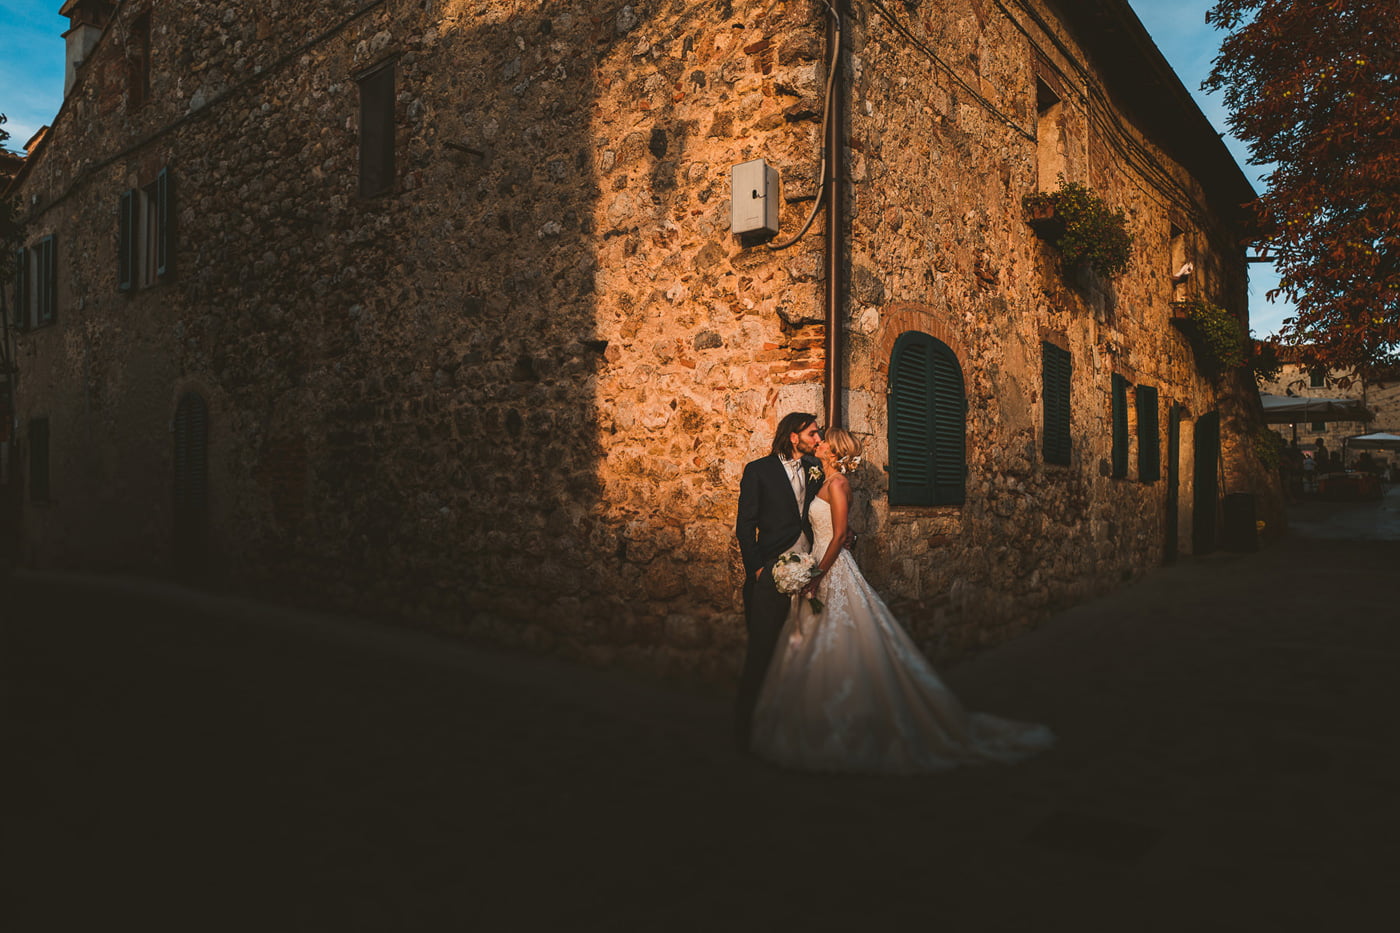 Andrea & Francesca | Wedding at Borgo San Luigi by Federico Pannacci 68